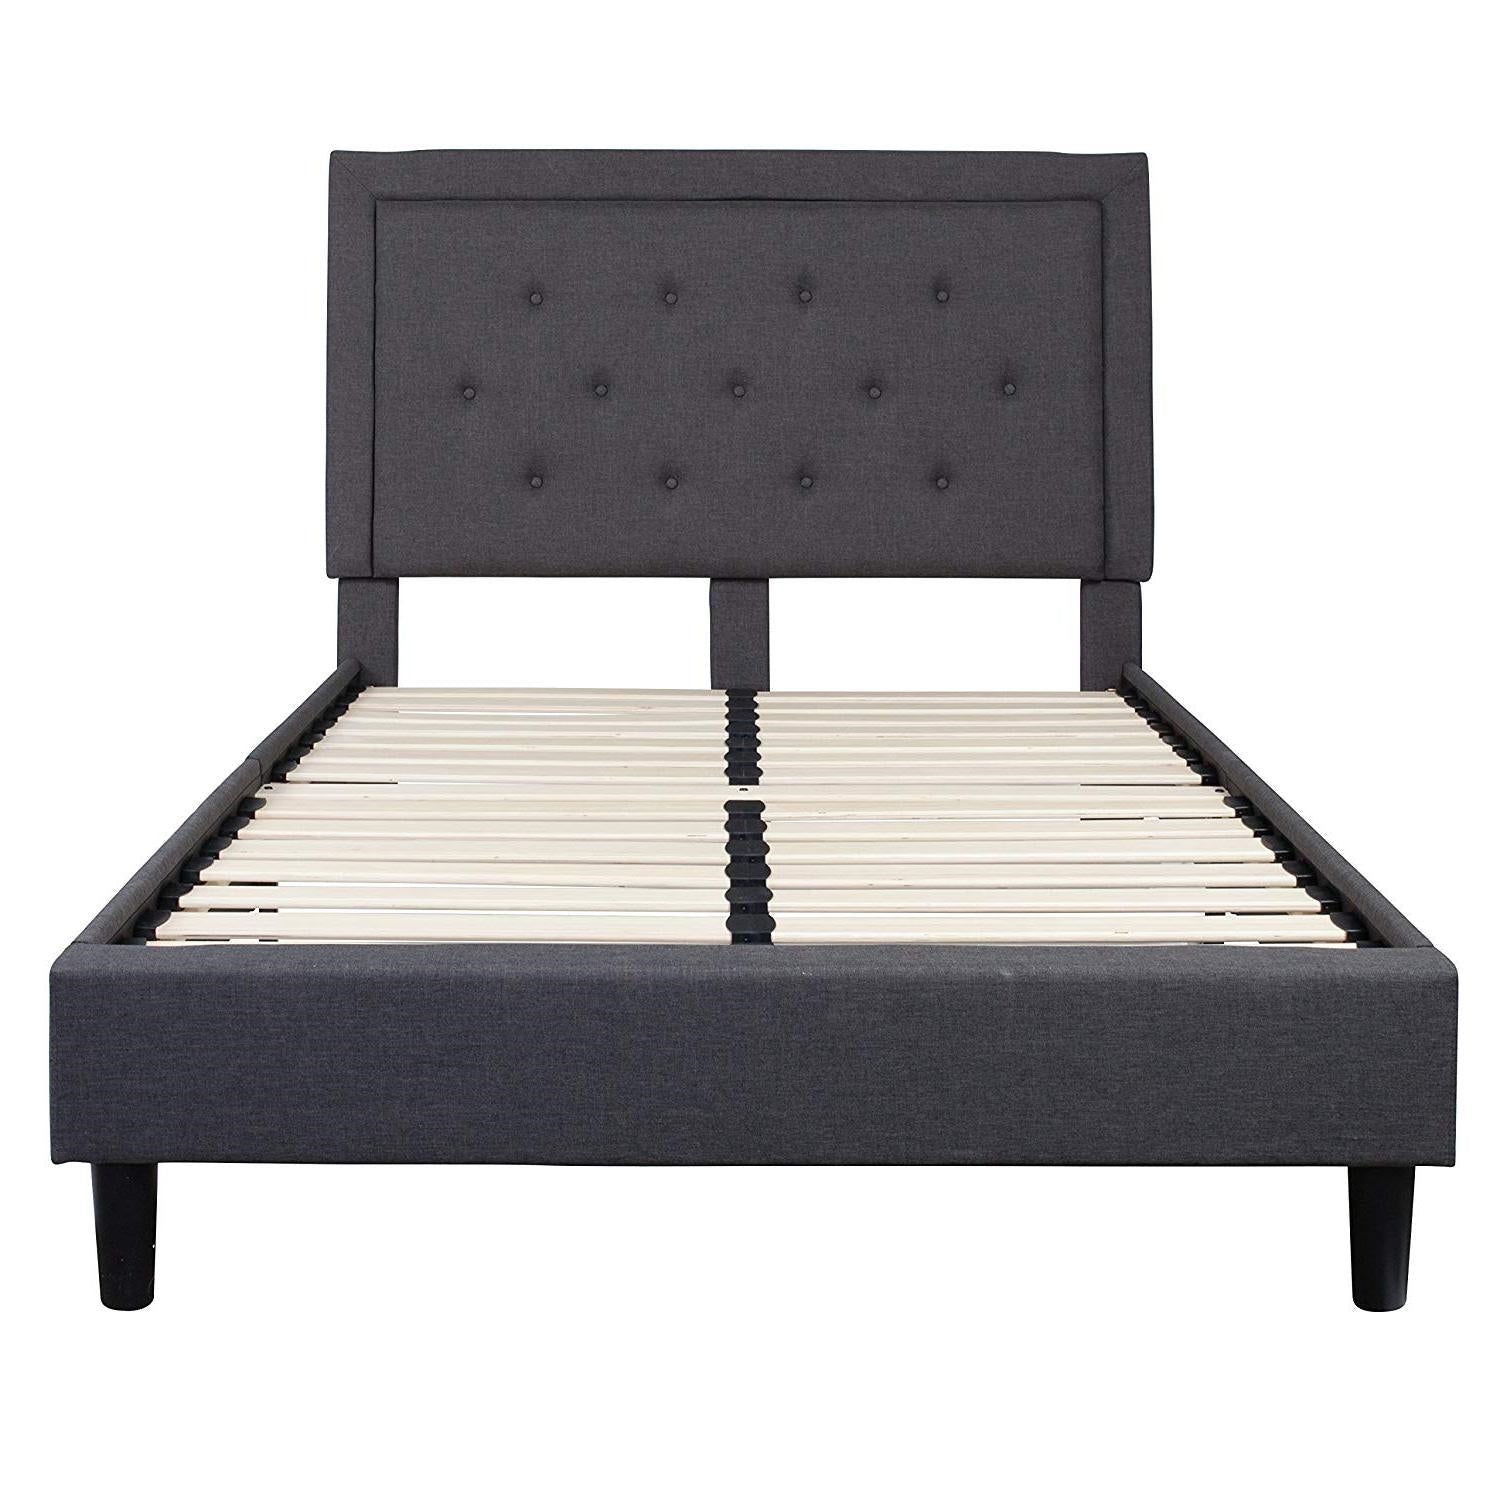 Bedroom > Bed Frames > Platform Beds - Full Size Dark Grey Fabric Upholstered Platform Bed Frame With Tufted Headboard